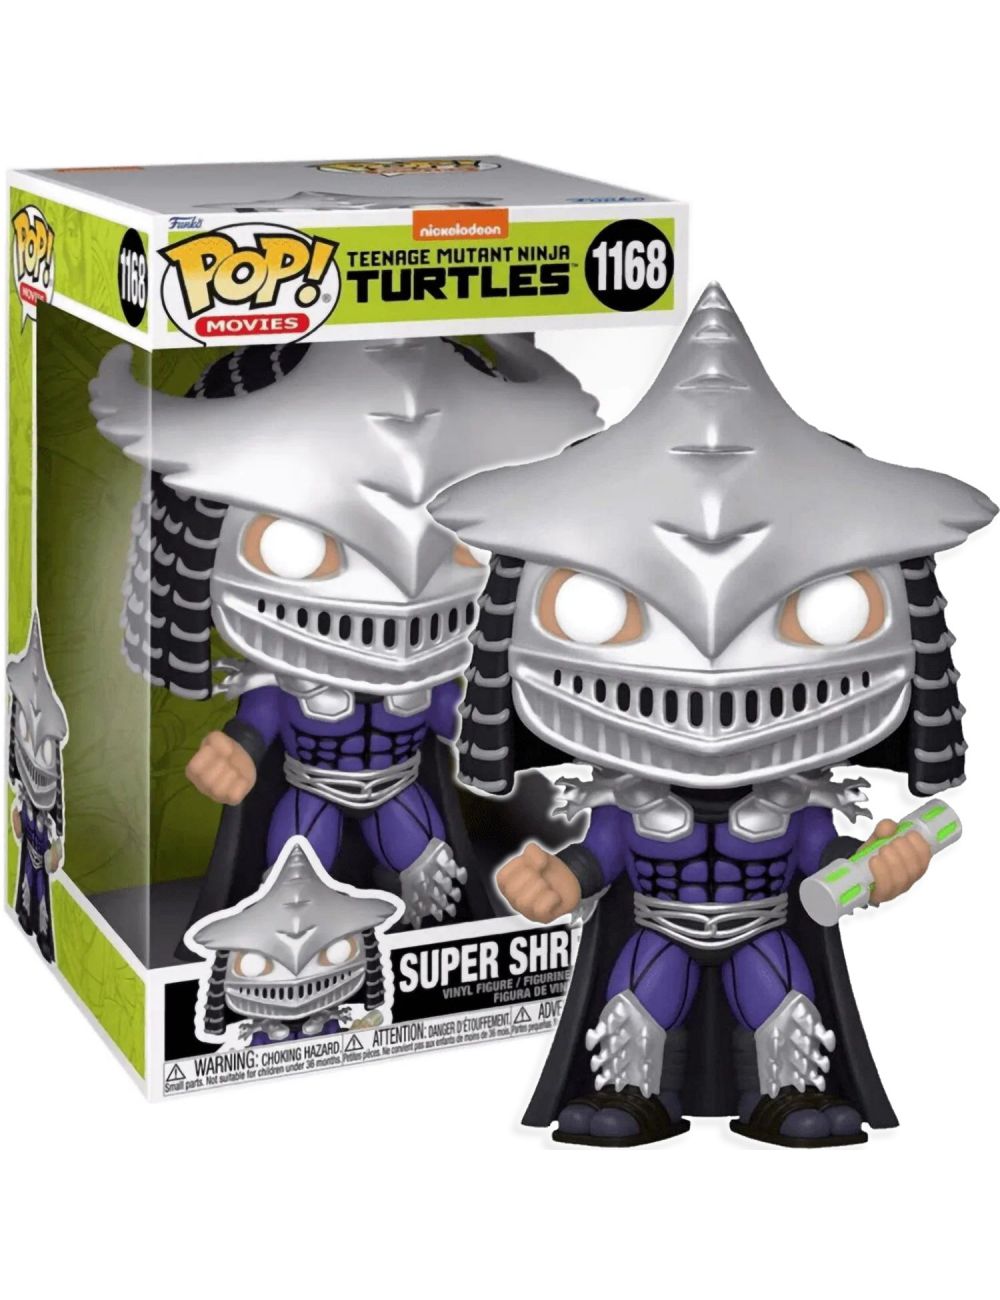 Funko POP! Jumbo Żółwie Ninja Super Shredder 25cm Figurka Winylowa 1168 58835